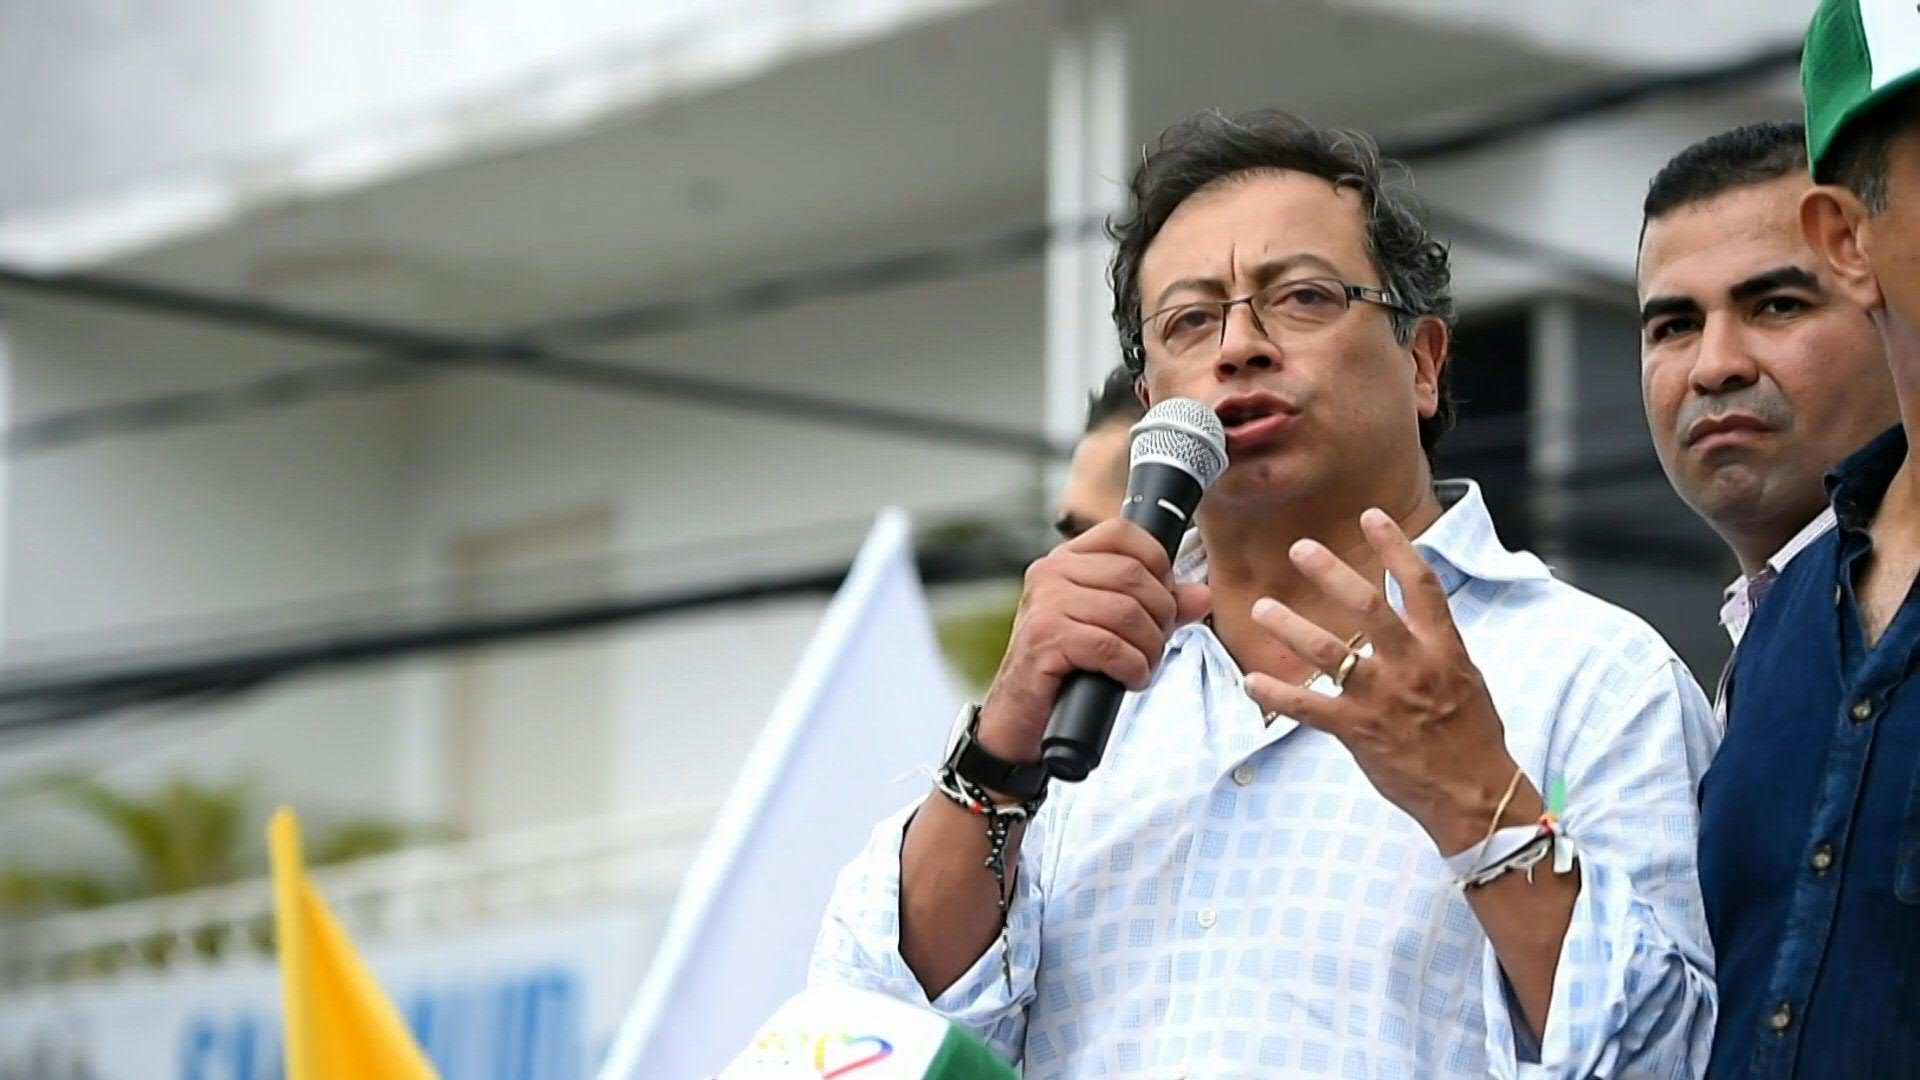 Fenalco Antioquia se sumó a las voces de respaldo a la presidencia de Petro, pero pidió reducir impuestos para generar empleo